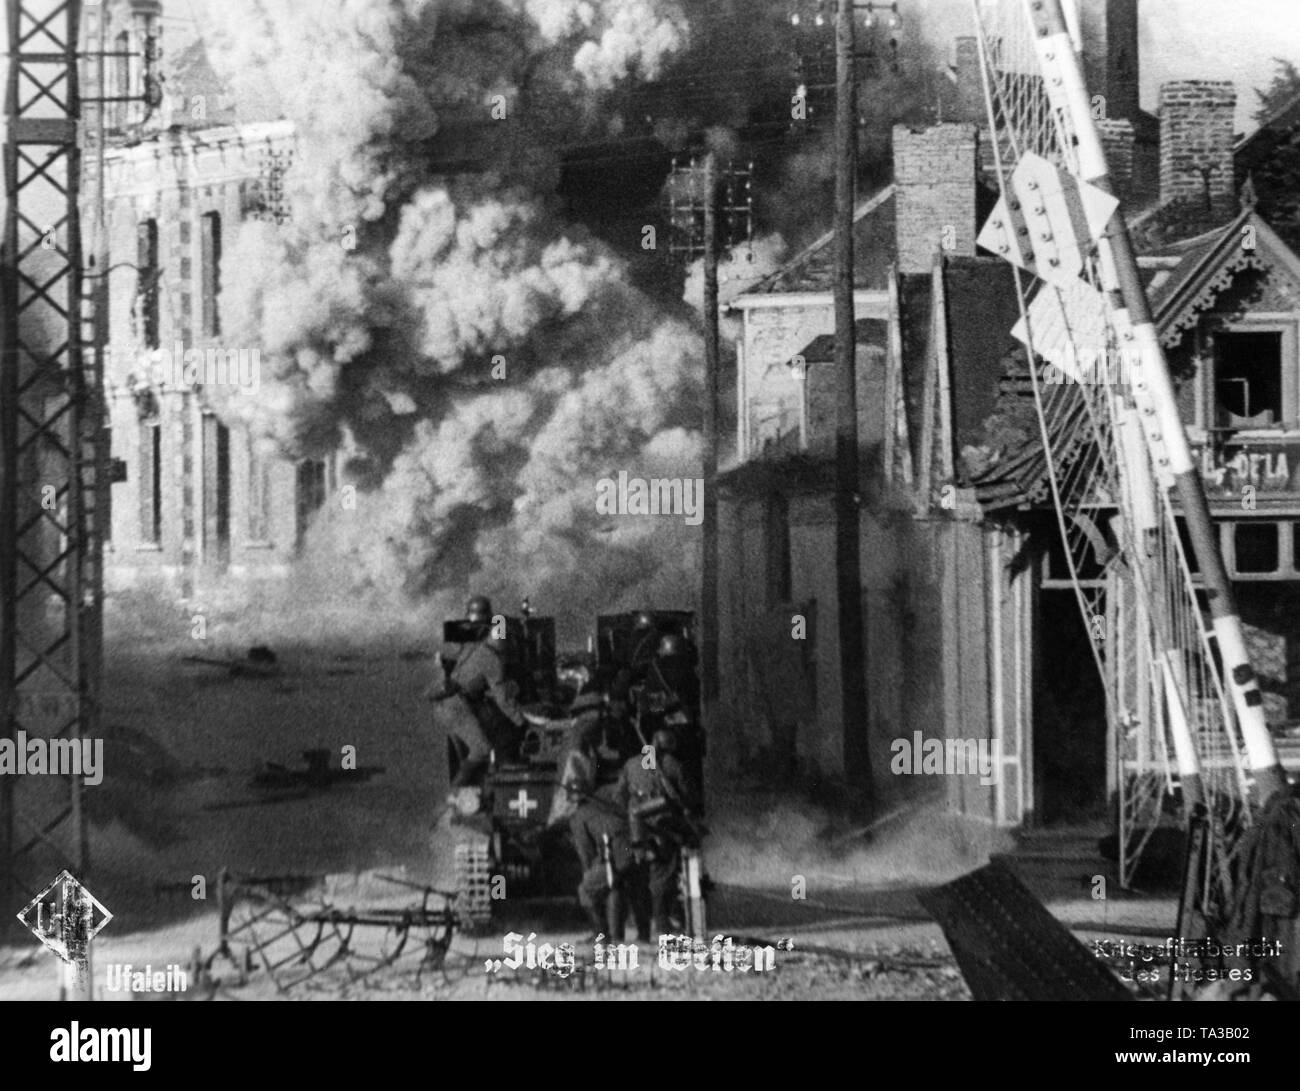 Un alemán Sturmpanzer I "Bisontes" incendios en un edificio. Desde Moviestill Sieg im Westen (Victoria en el oeste). Foto de stock